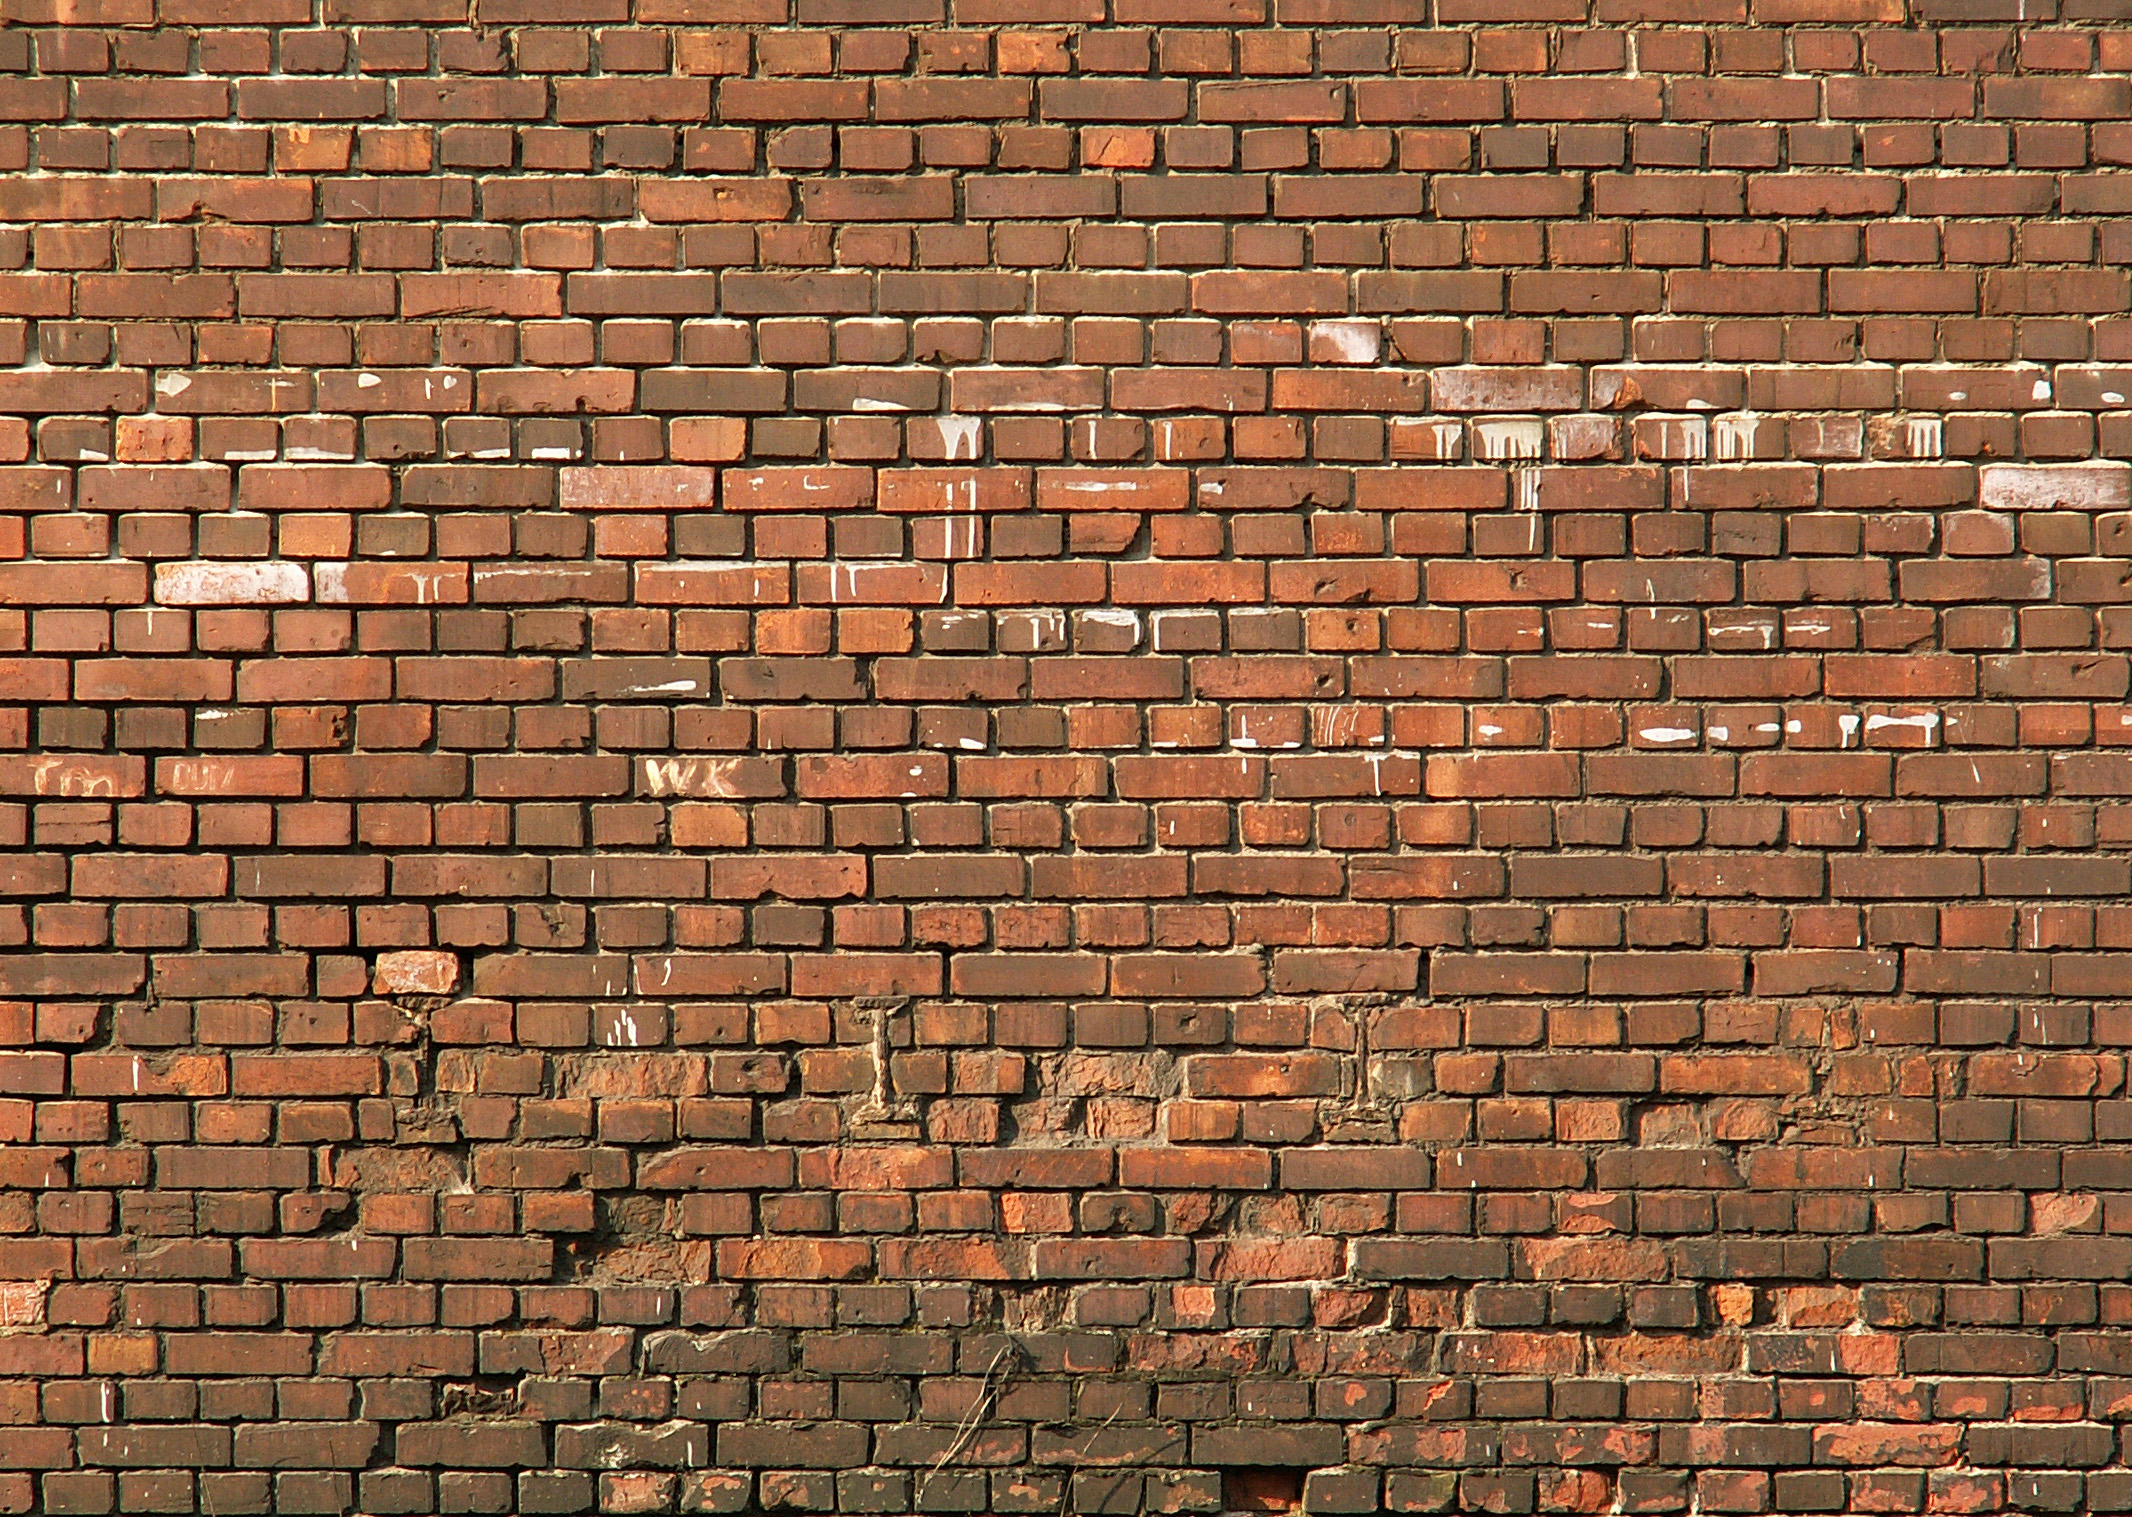 кирпичная стена, brick wall, текстура кирпичной стены, кирпичи, bricks texture